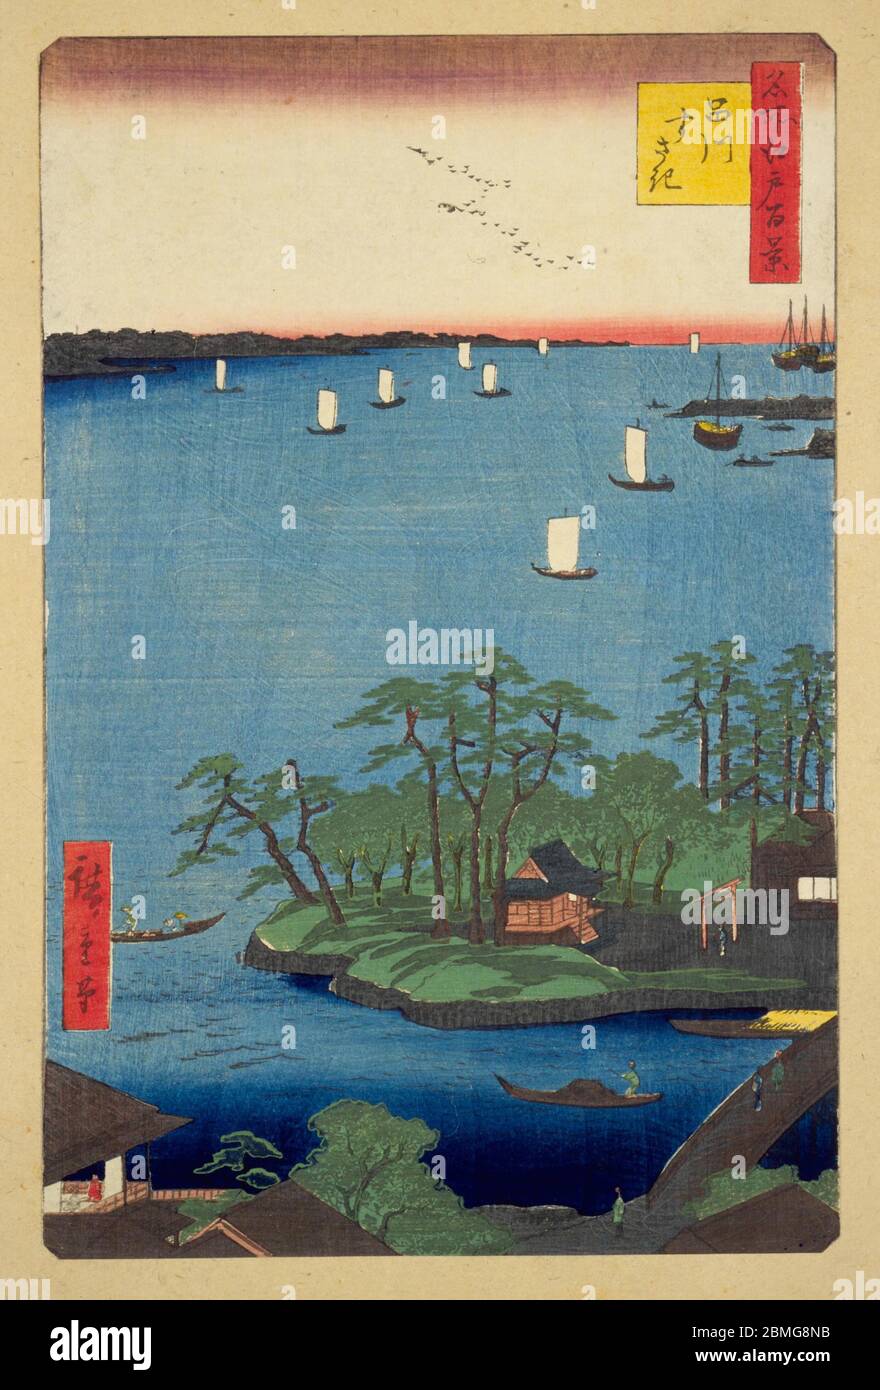 [ 1850er Japan - Edo Bay von Shinagawa ] - der Megurogawa Fluss, Benten Schrein und Edo Bay aus der Sicht von Shinagawa in Edo (aktuelle Tokyo), 1856 (Ansei 3). Dieser Holzschnitt ist Bild 83 in hundert berühmten Ansichten von Edo (名所江戸百景, Meisho Edo Hyakkei), einer Serie von Ukiyoe Künstler Utagawa Hiroshige (歌川広重, 1797–1858) erstellt. Es ist eine von 26 Herbstszenen der Serie. Titel: Shinagawa Susaki (品川すさき) Vintage Ukiyoe Holzschnitt aus dem 19. Jahrhundert. Stockfoto